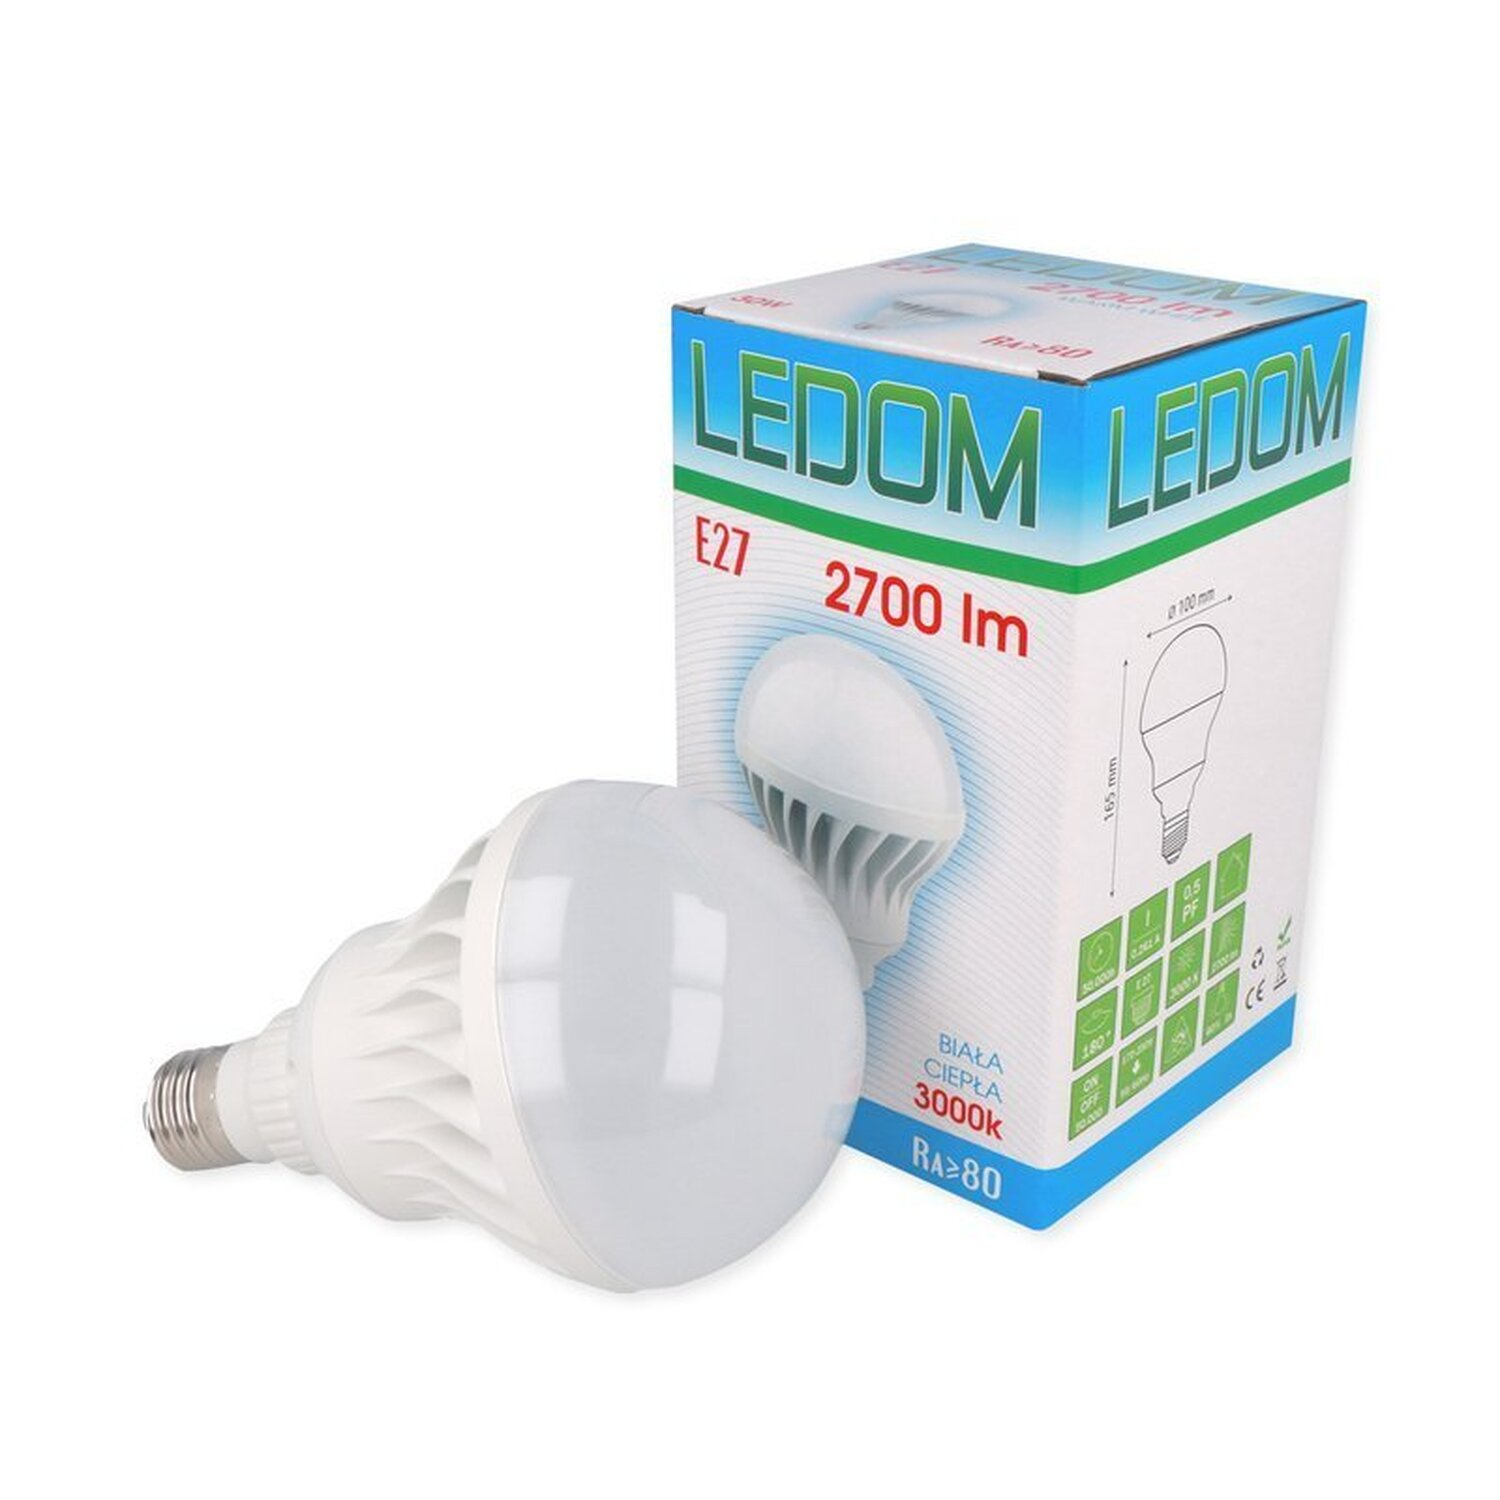 2700 Leuchtmittel Warmweiß Ceramic LINE 30W LED E27 lm LED LED